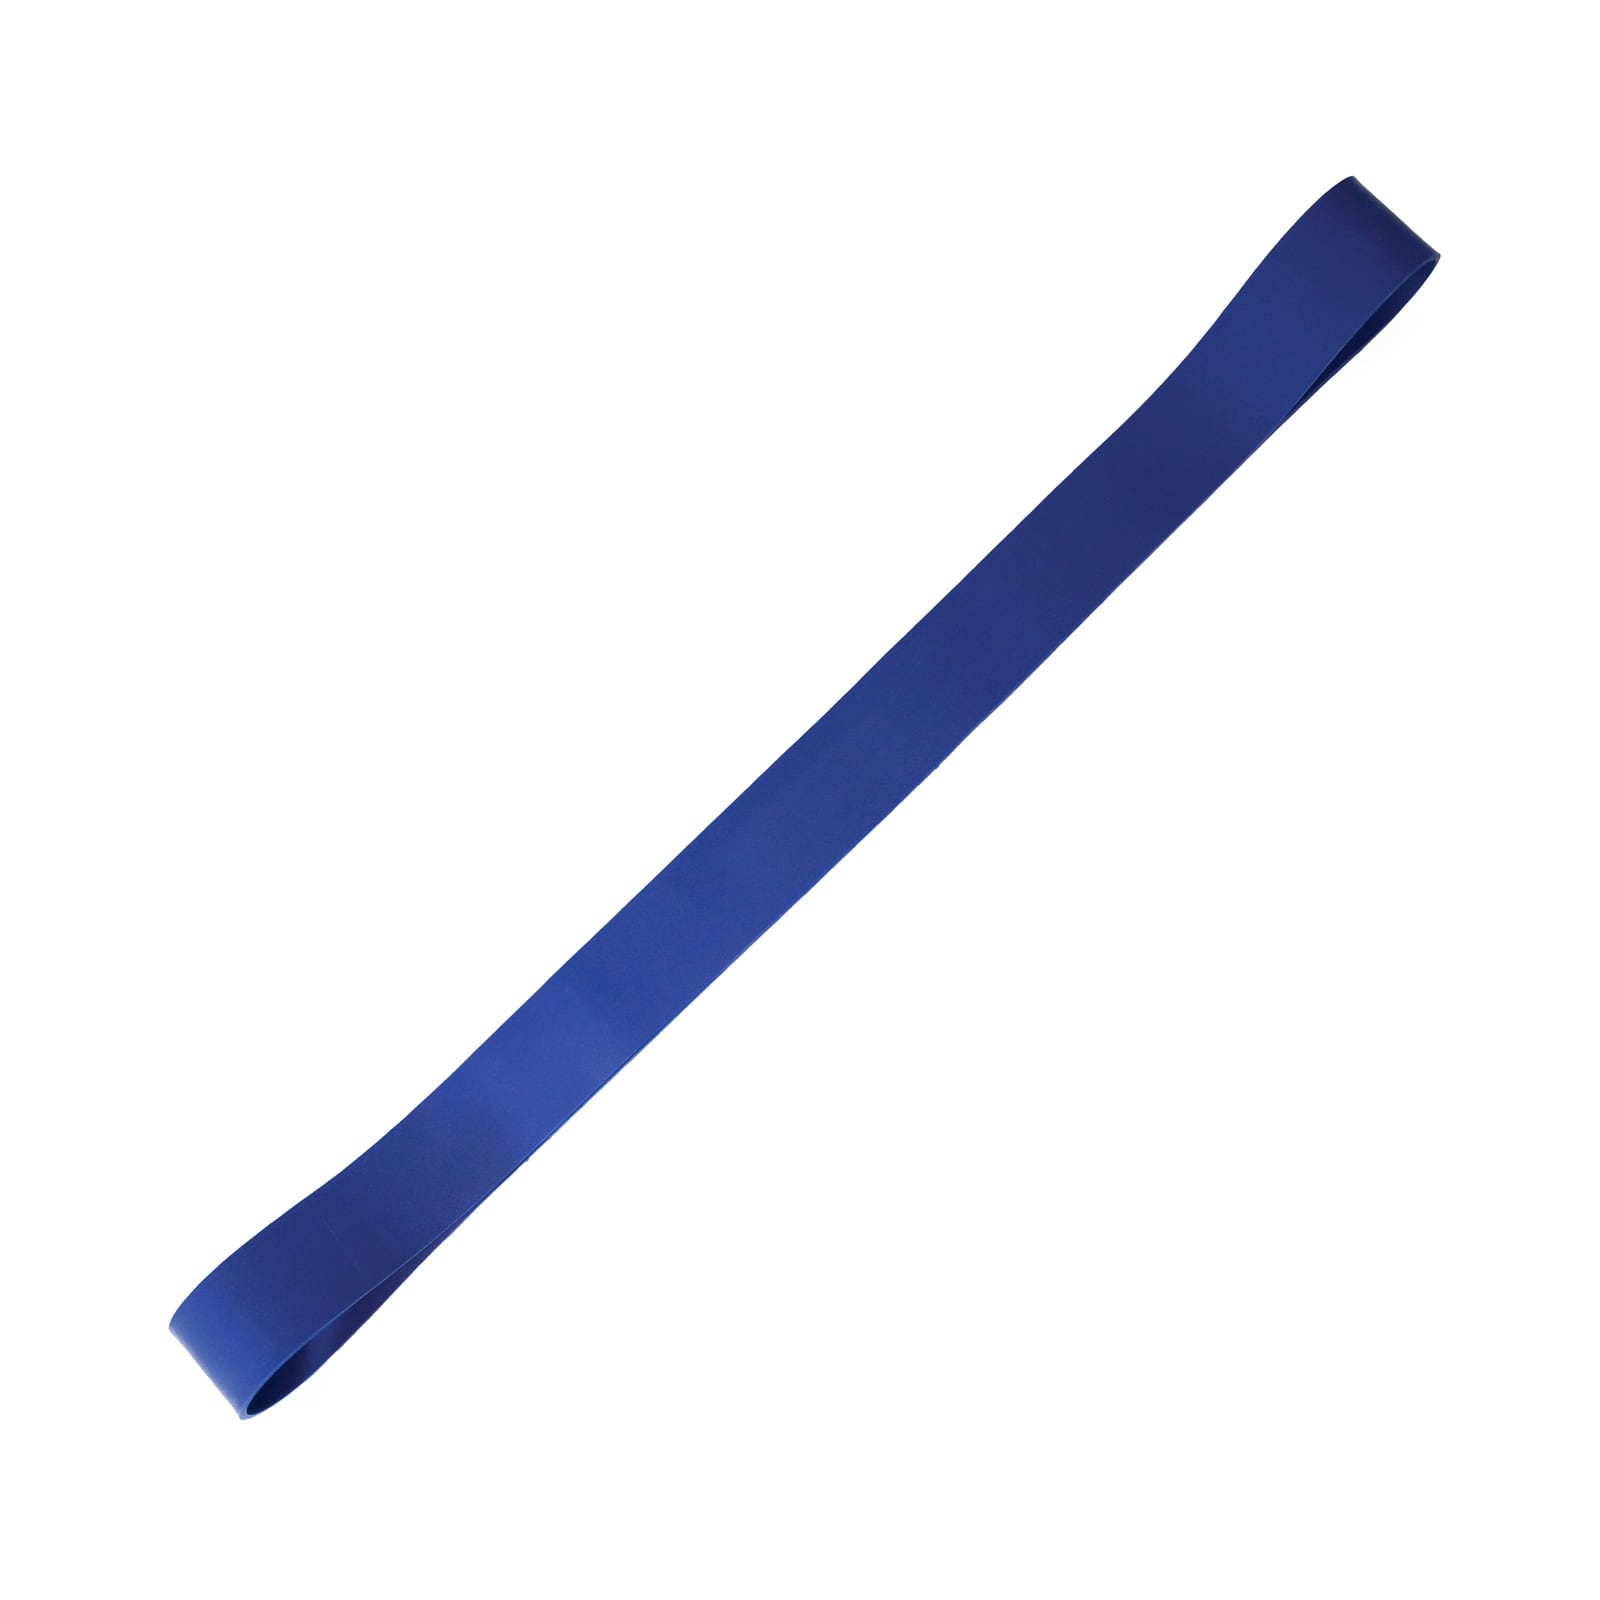 Super bande elastique 104x6.5 bleue - Extra-fort